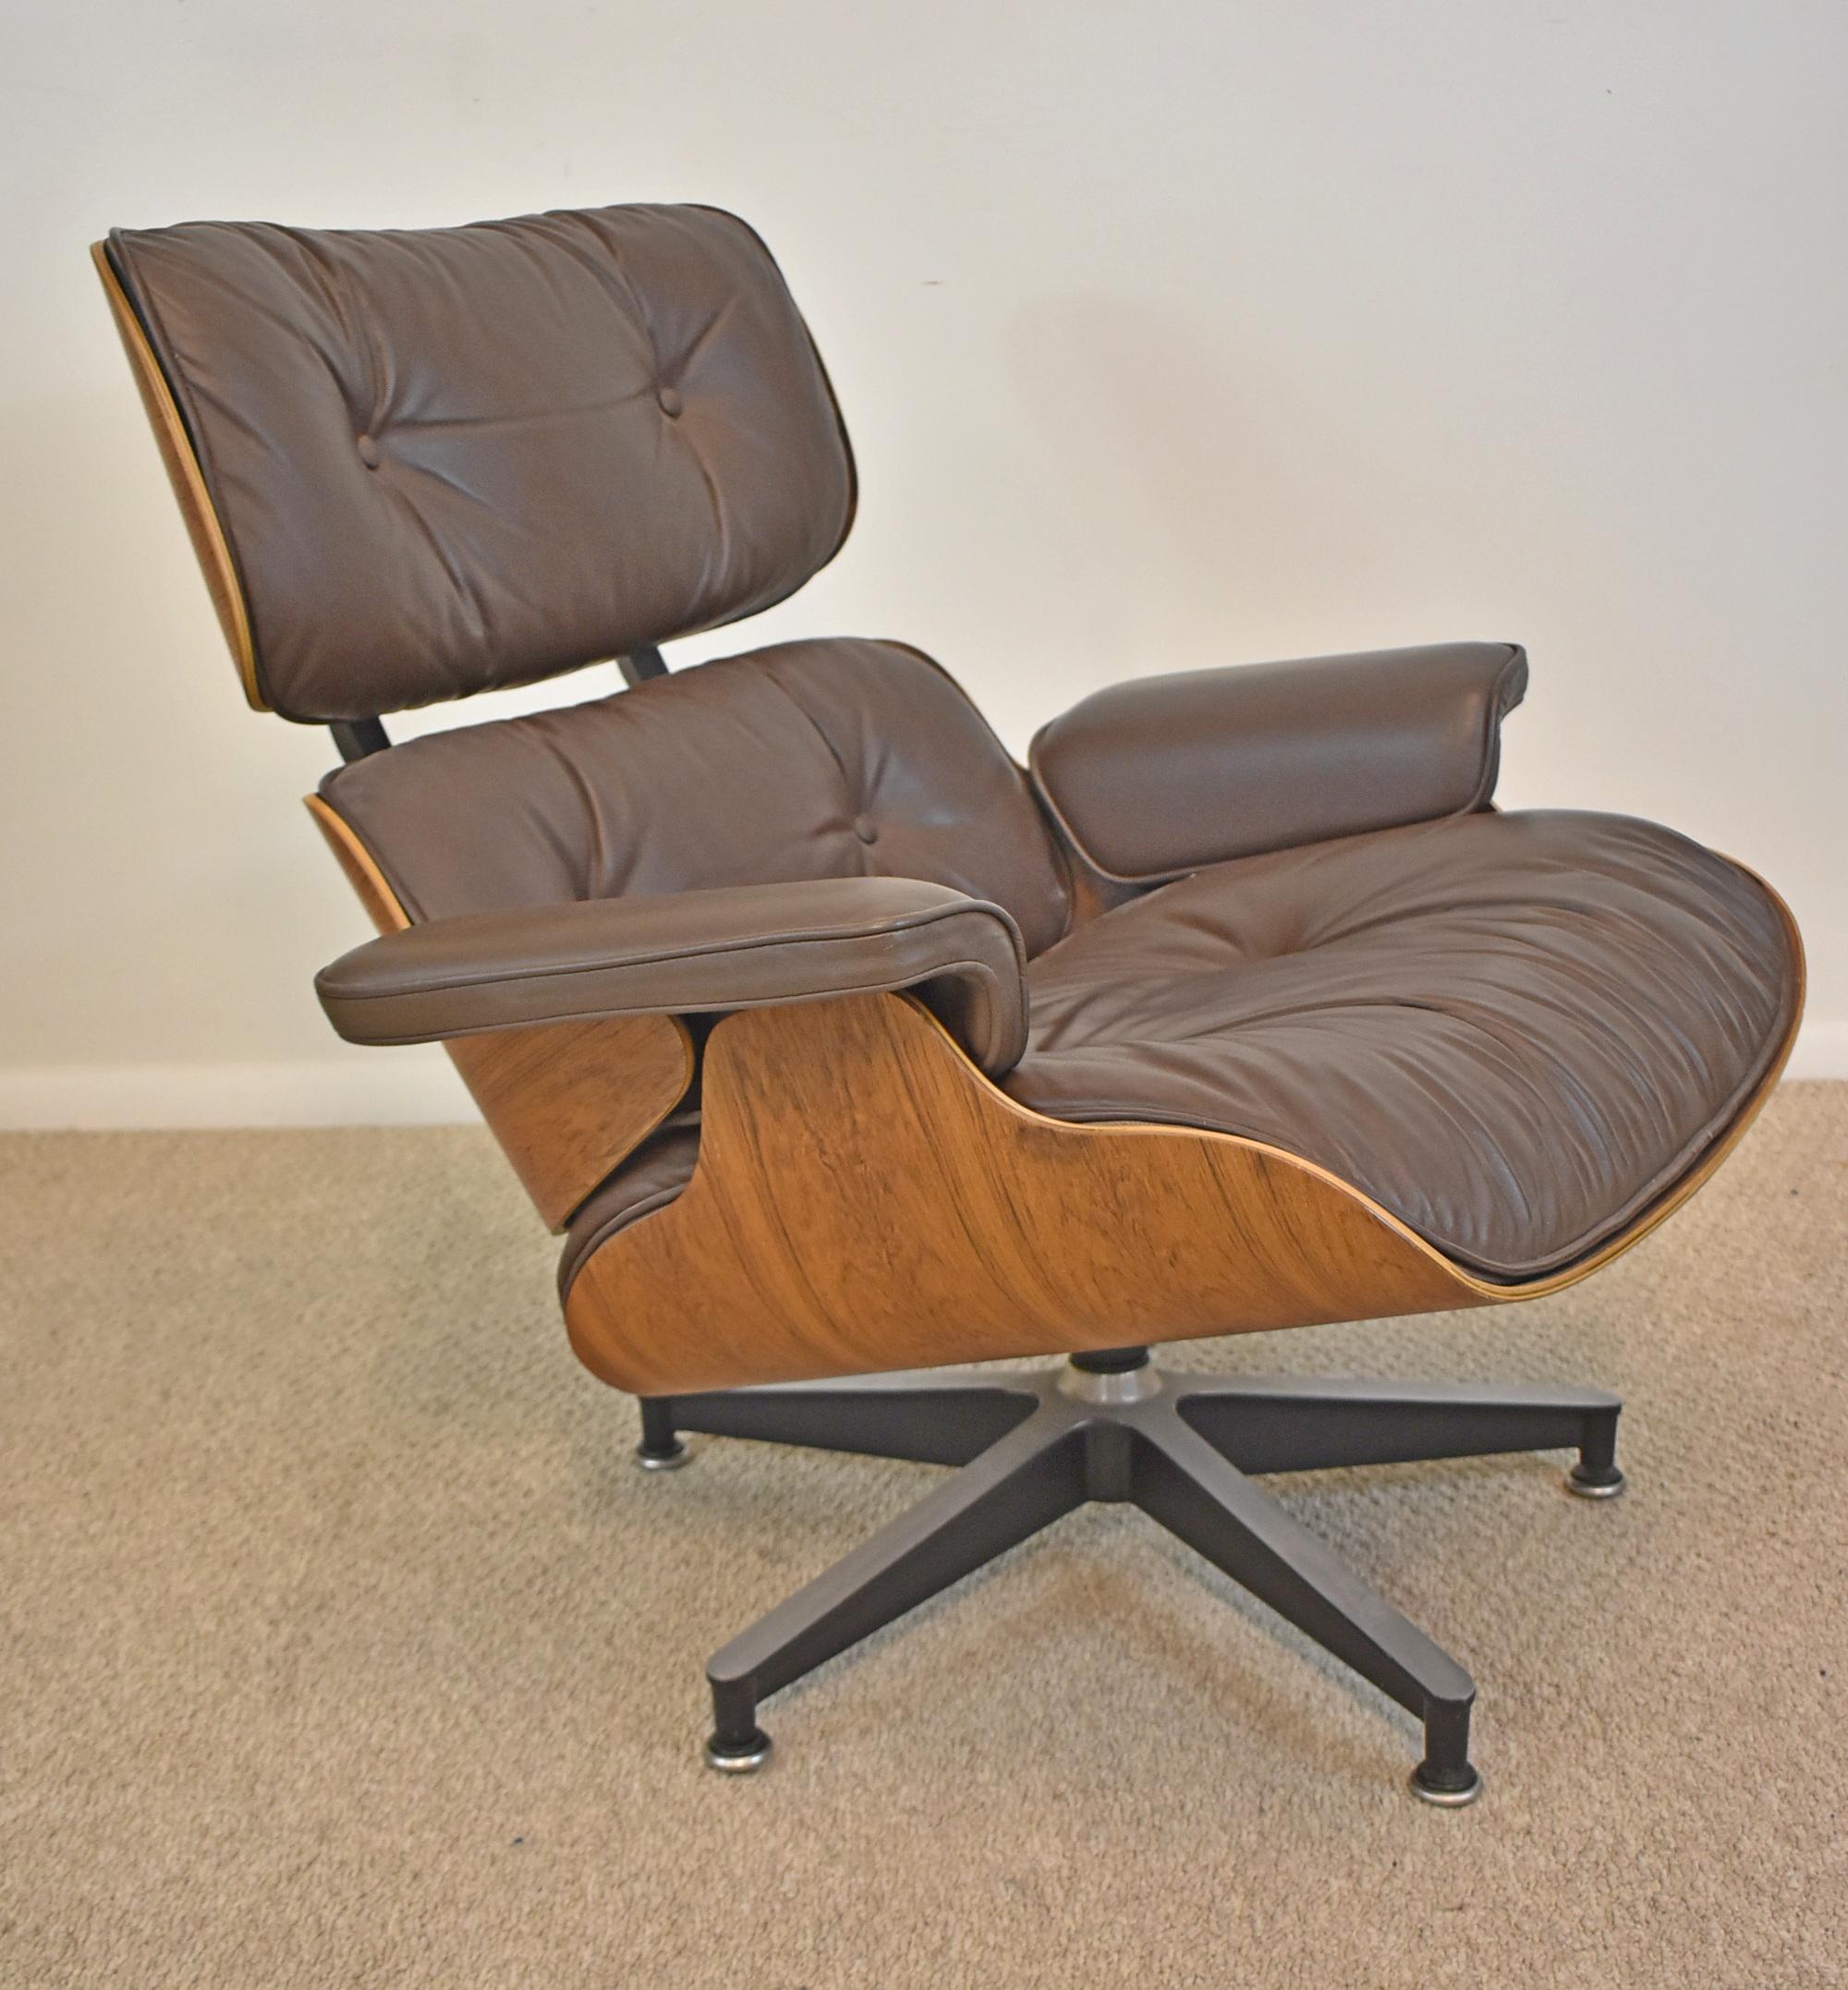 Herman Miller Eames Lounge Stuhl & Ottomane in Palisanderholz. Eames Stuhl und Ottomane. Originalausführung Palisander und braunes Leder. Toller Zustand. Gebaut in den 1980er Jahren, wie auf dem Etikett angegeben. Gekennzeichnet mit dem Herman